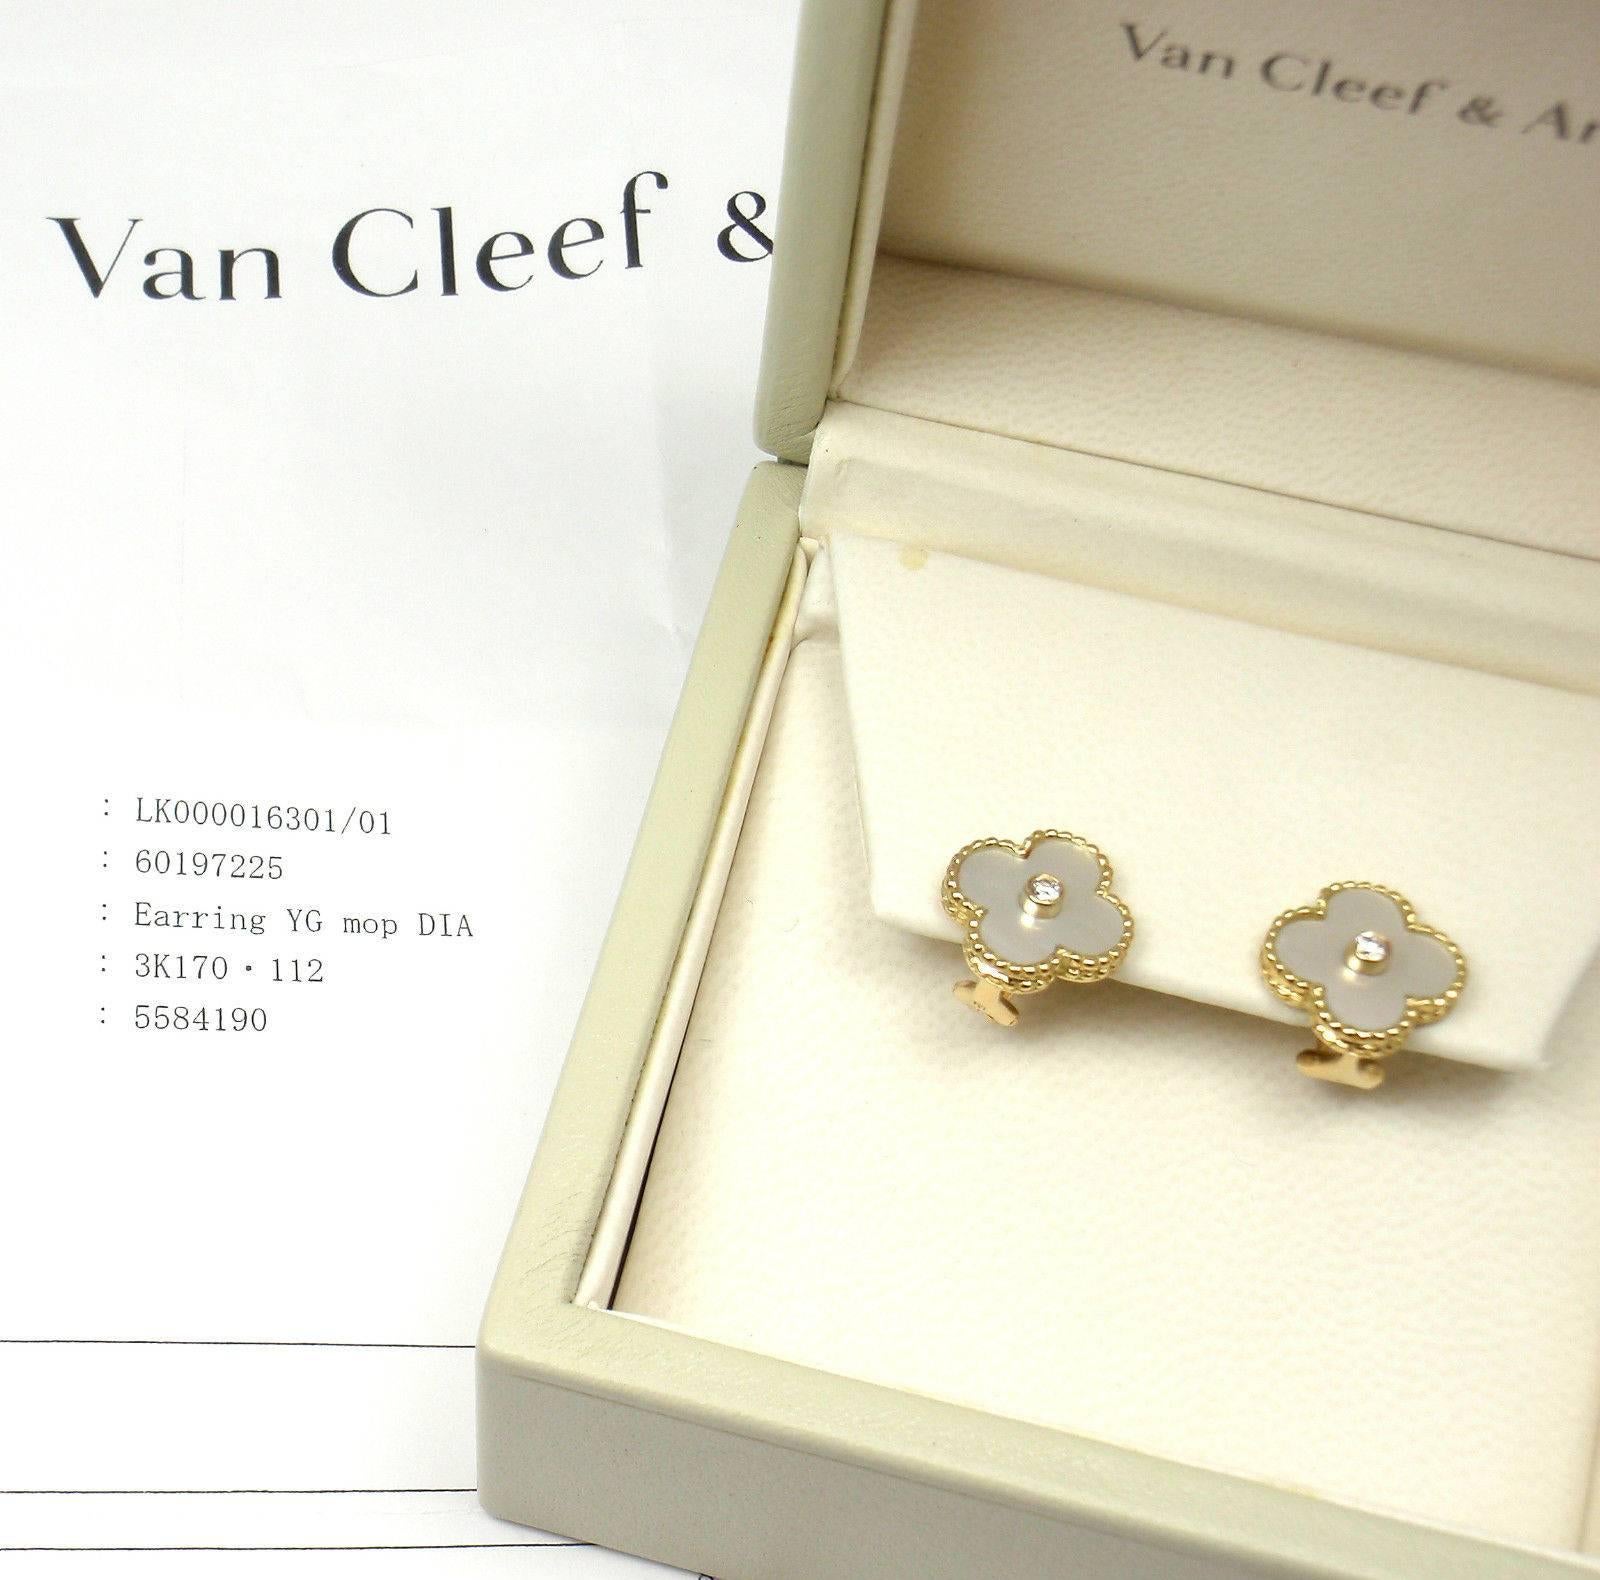 mother of pearl van cleef earrings